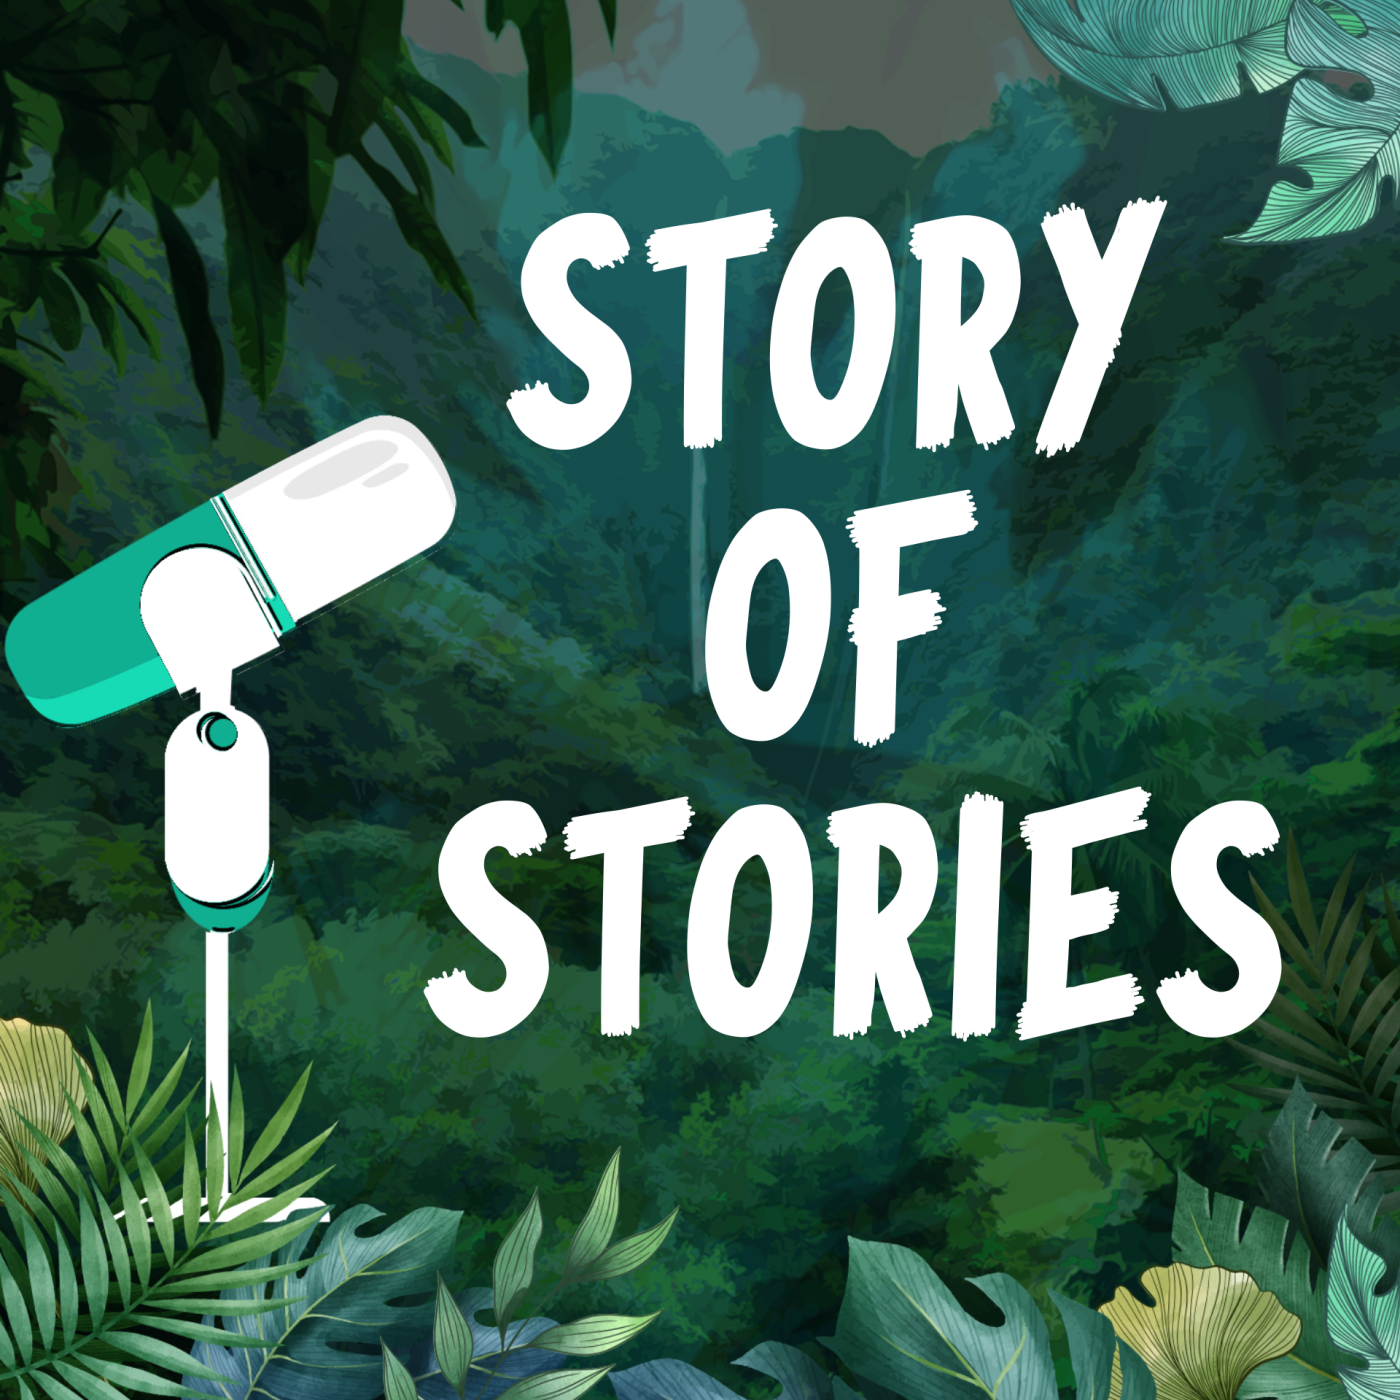 Story of stories : Quel est le secret des contenus qui engagent ? Comment capter l’attention dans un univers bruyant ?